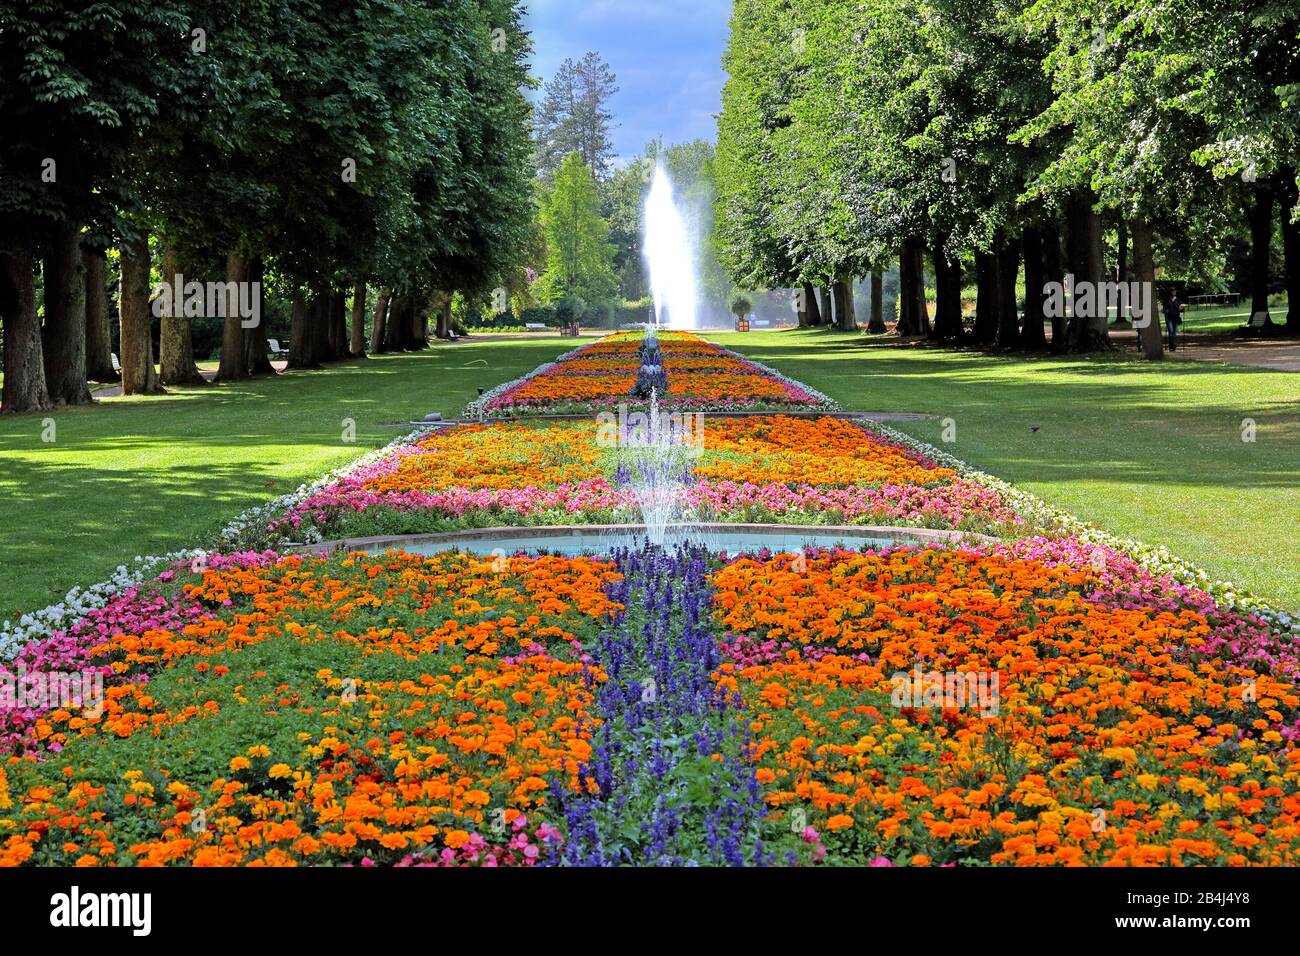 Fountain Avenue avec de longues bordures fleuries dans le parc thermal Bad Pyrmont, Staatsbad Emmertal, Weserbergland, Basse-Saxe, Allemagne Banque D'Images